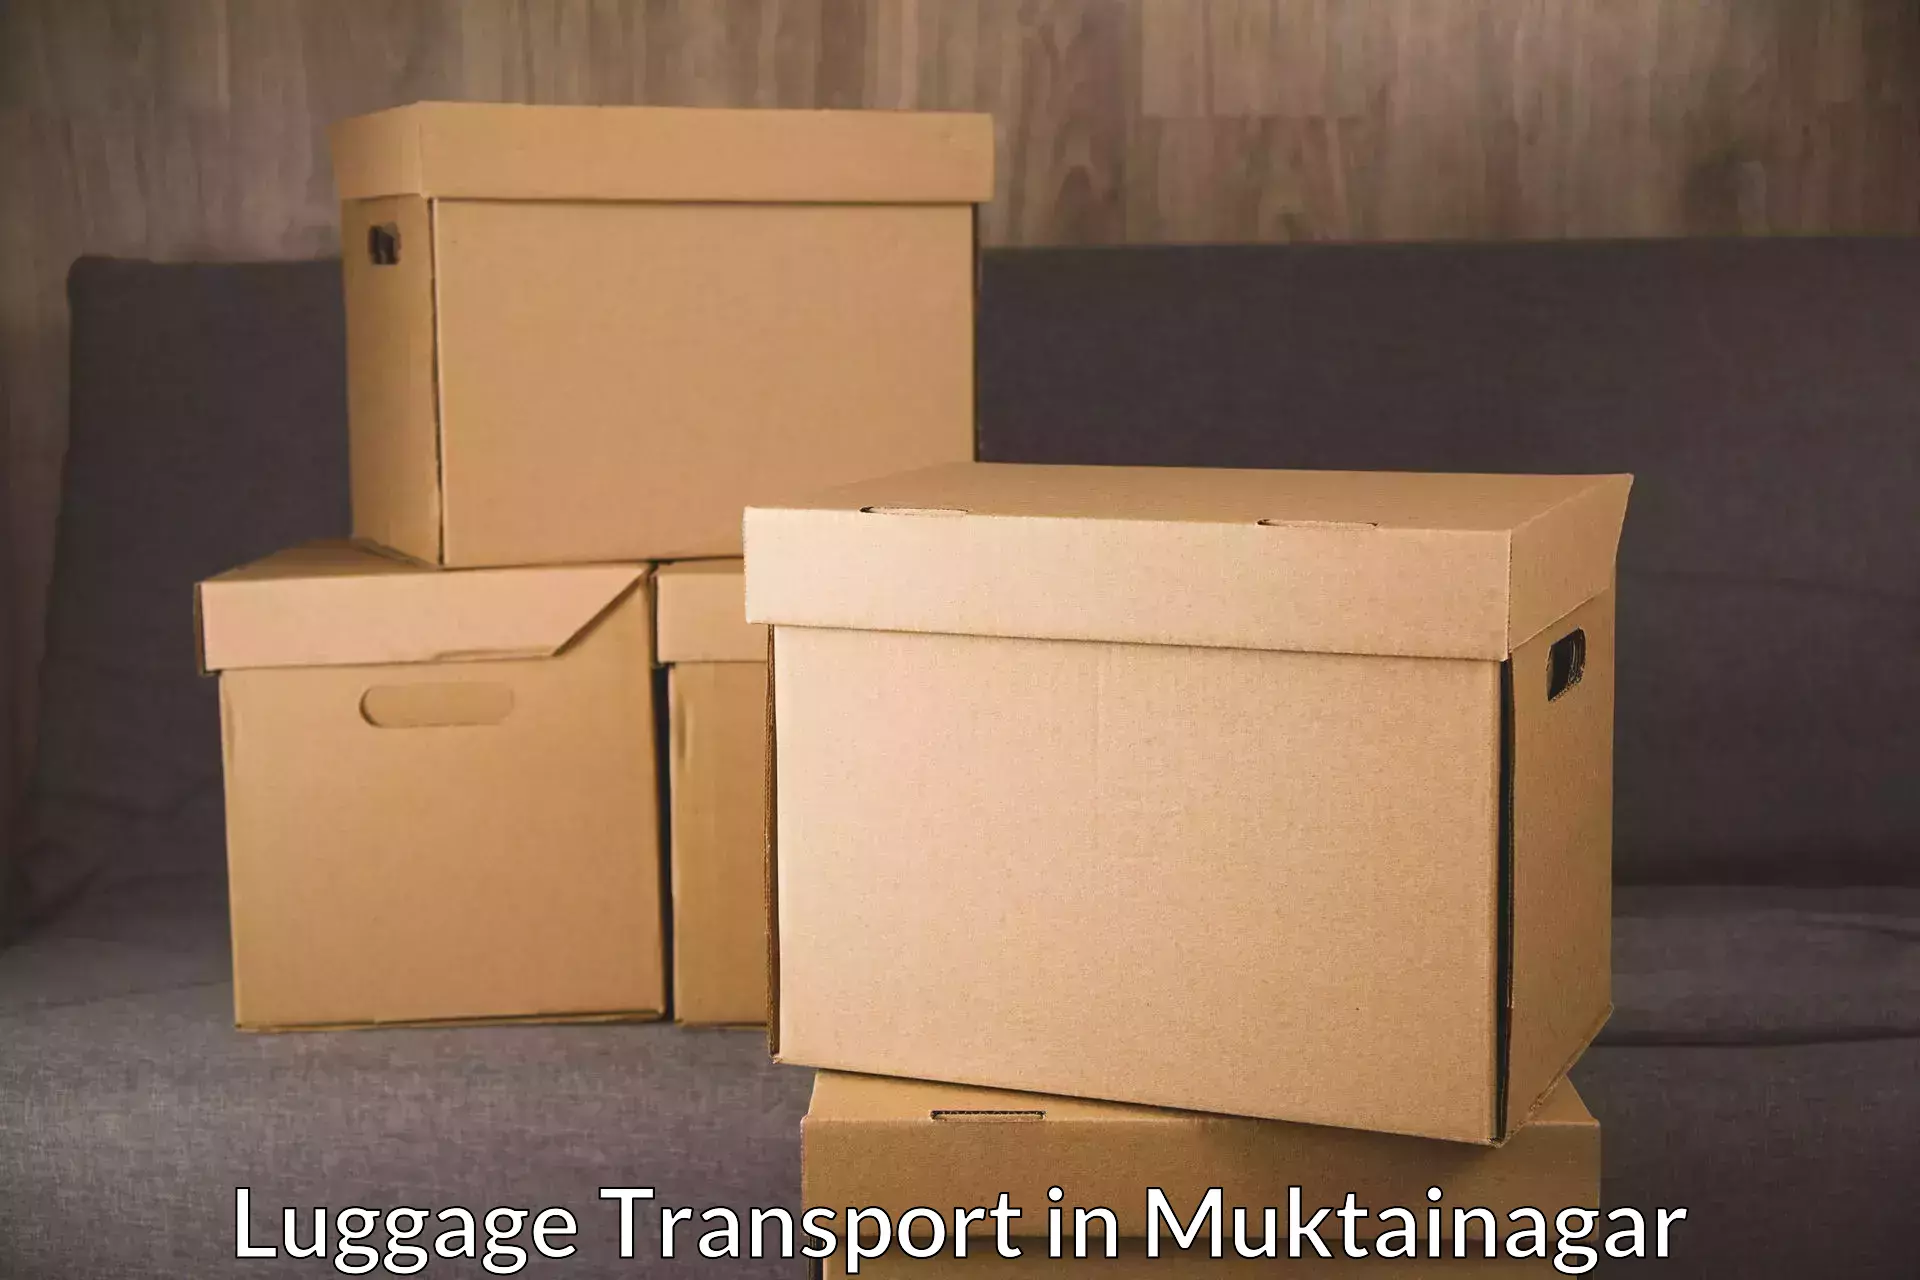 Luggage dispatch service in Muktainagar